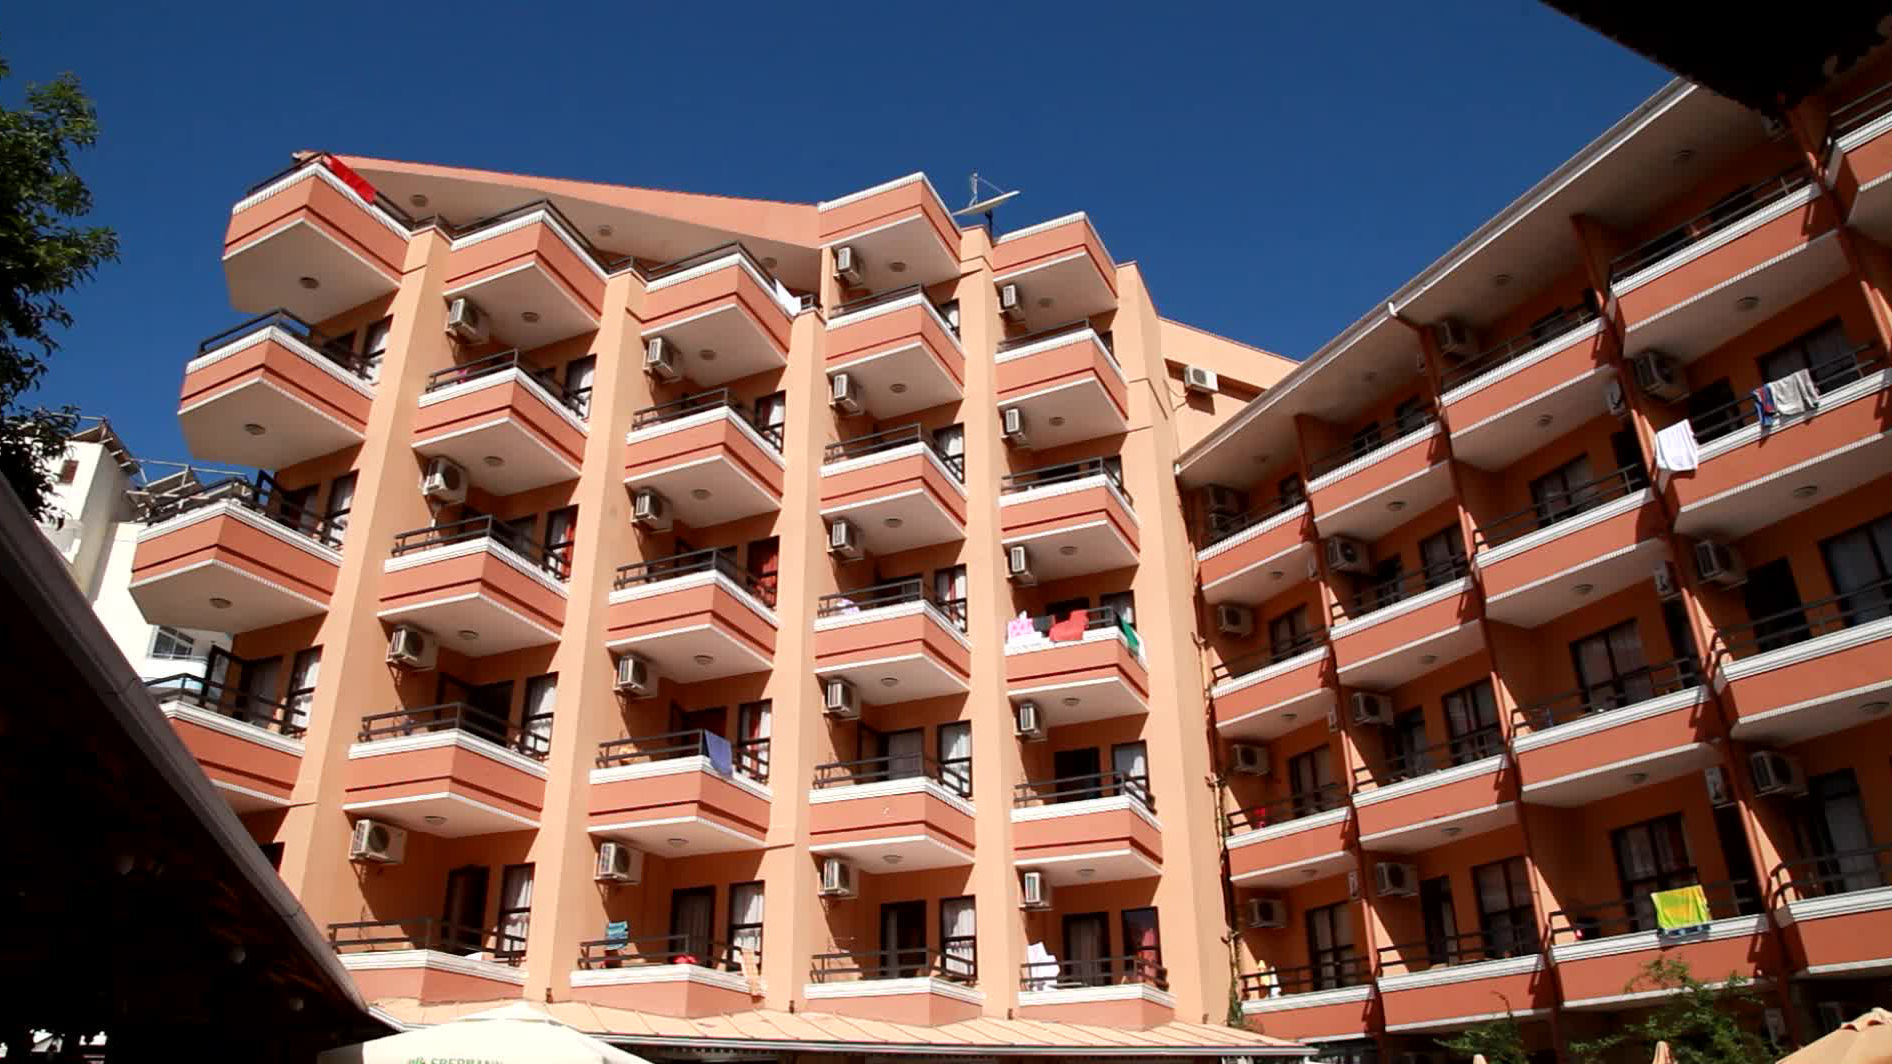 Fatih Hotel